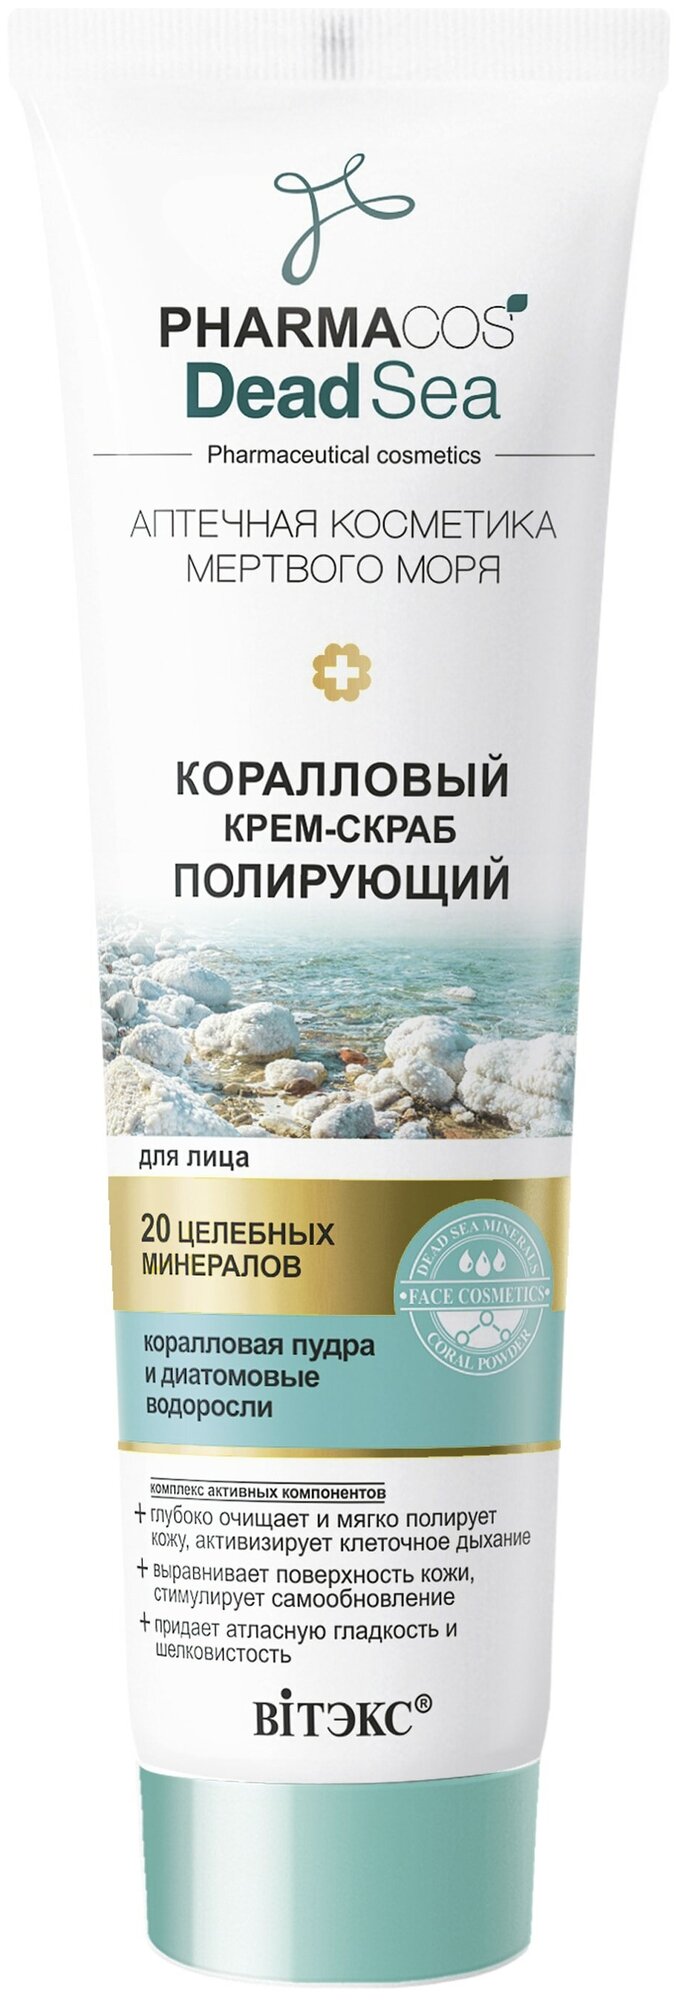 Витэкс крем-скраб для лица Pharmacos Dead Sea Коралловый Полирующий